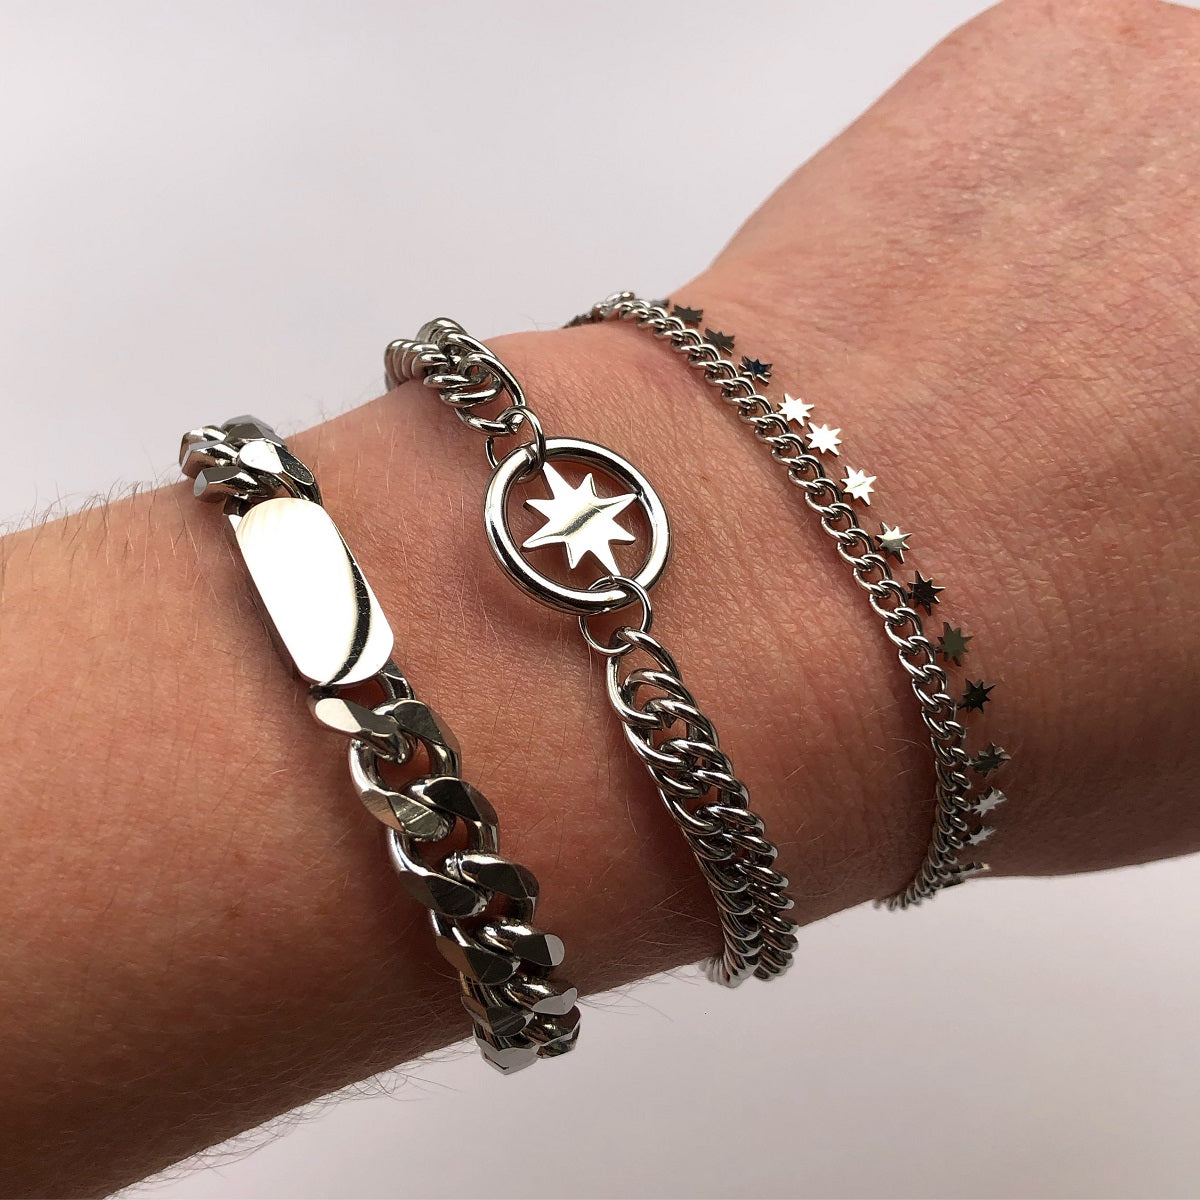 Waterproof armband Chunky Chain Star, gemaakt van stainless steel. De armband zilver verkleurt niet en blijft mooi. Deze waterproof armband is verkrijgbaar in het goud en zilver. www.jenelry.com